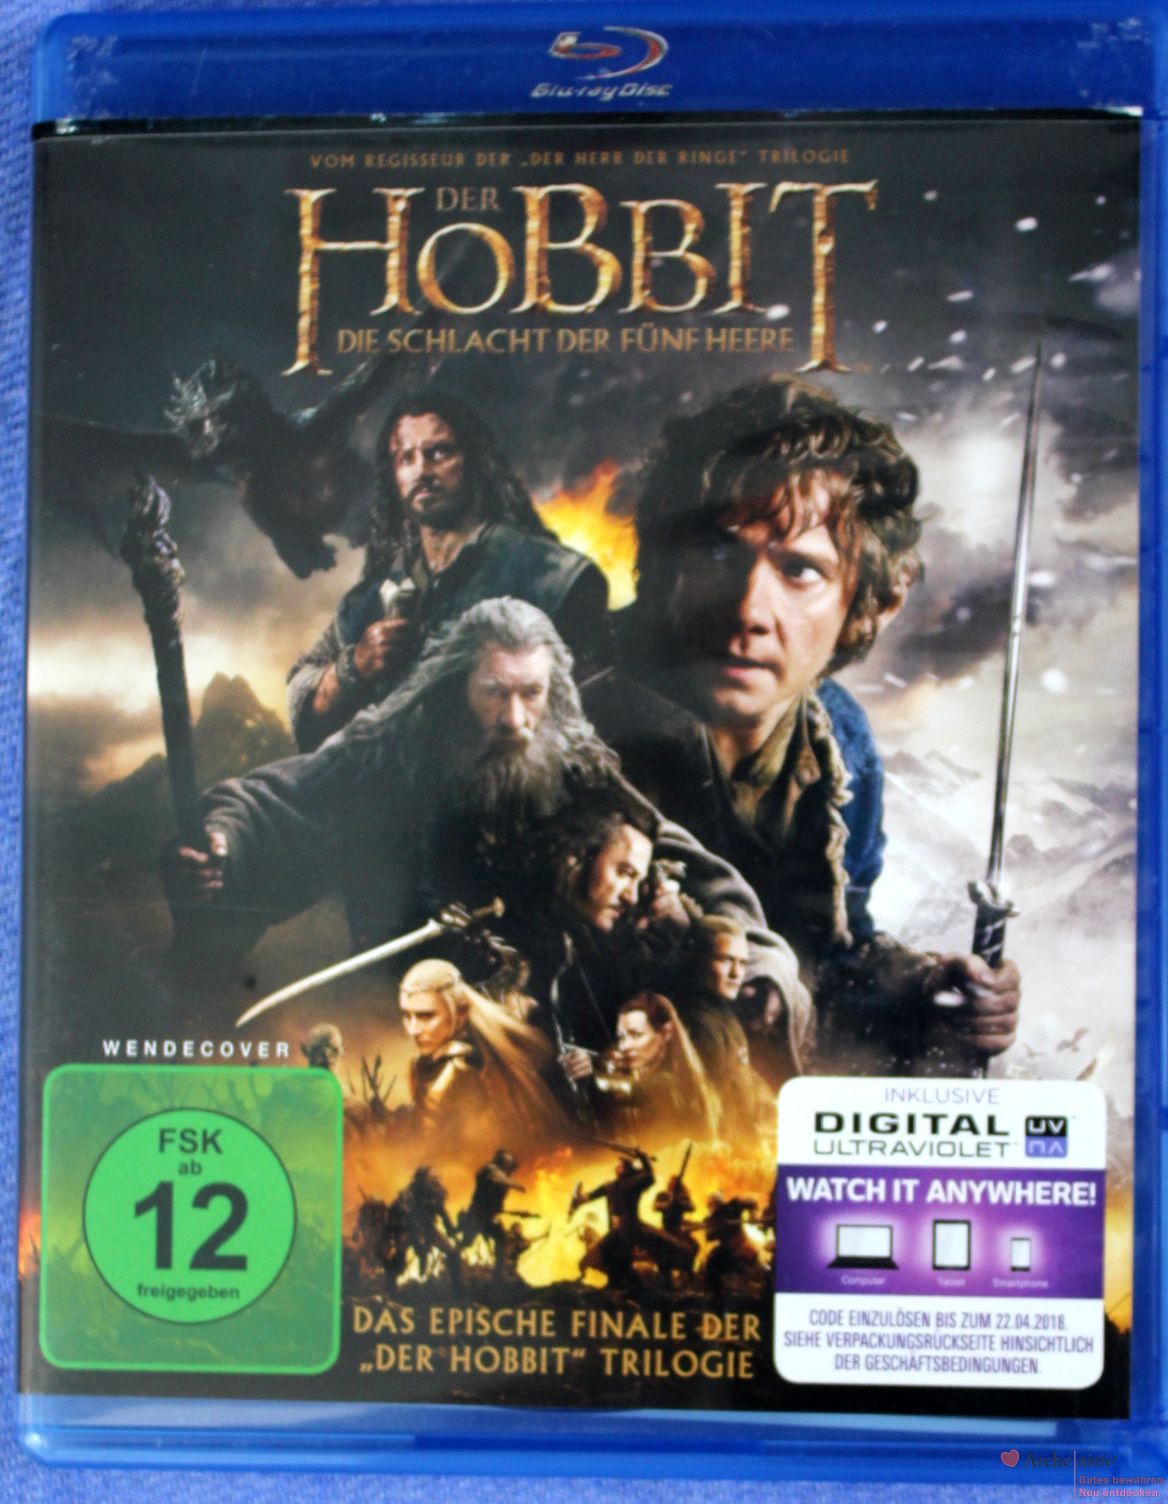 Der Hobbit  - Die Schlacht der fünf Heere auf Bluray - mit Specials  gebr.